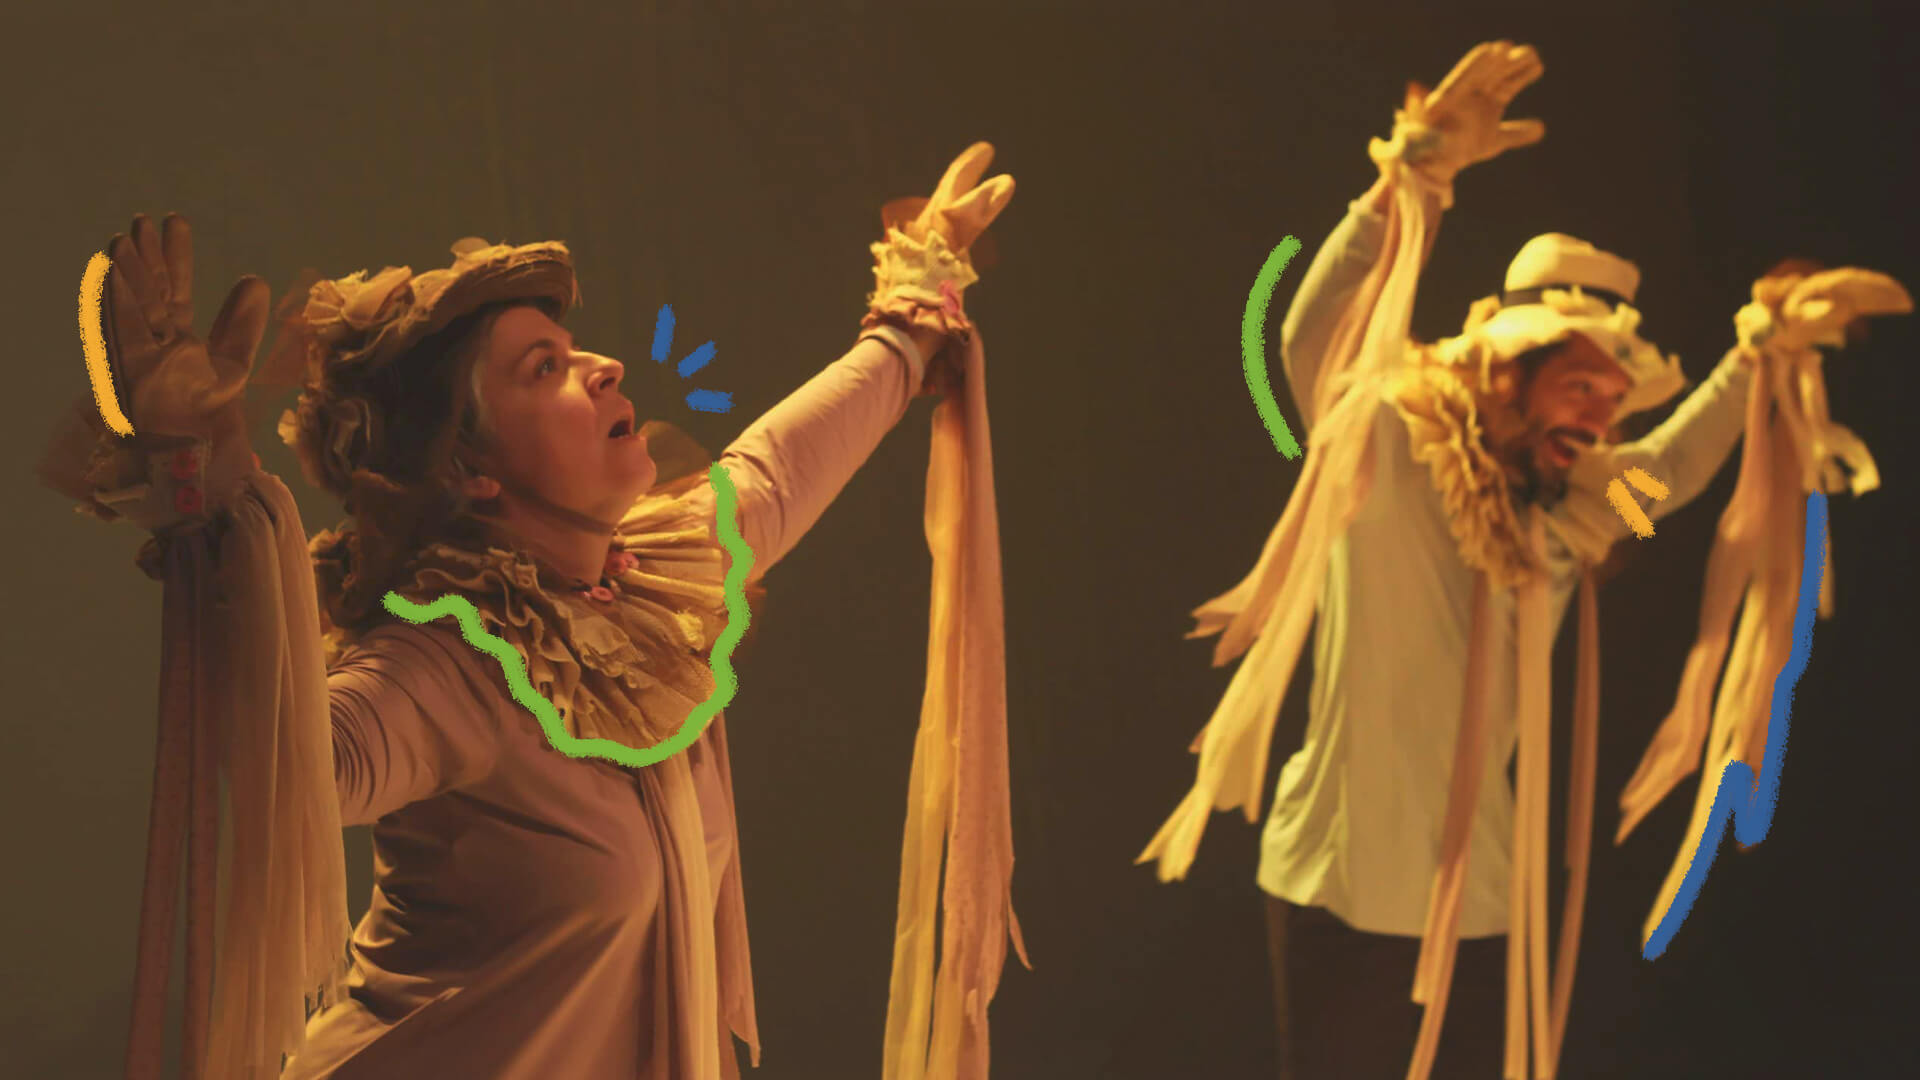 Vambora!: na foto, atores usam roupas em tons de bege. A imagem possui intervenções de rabiscos coloridos.